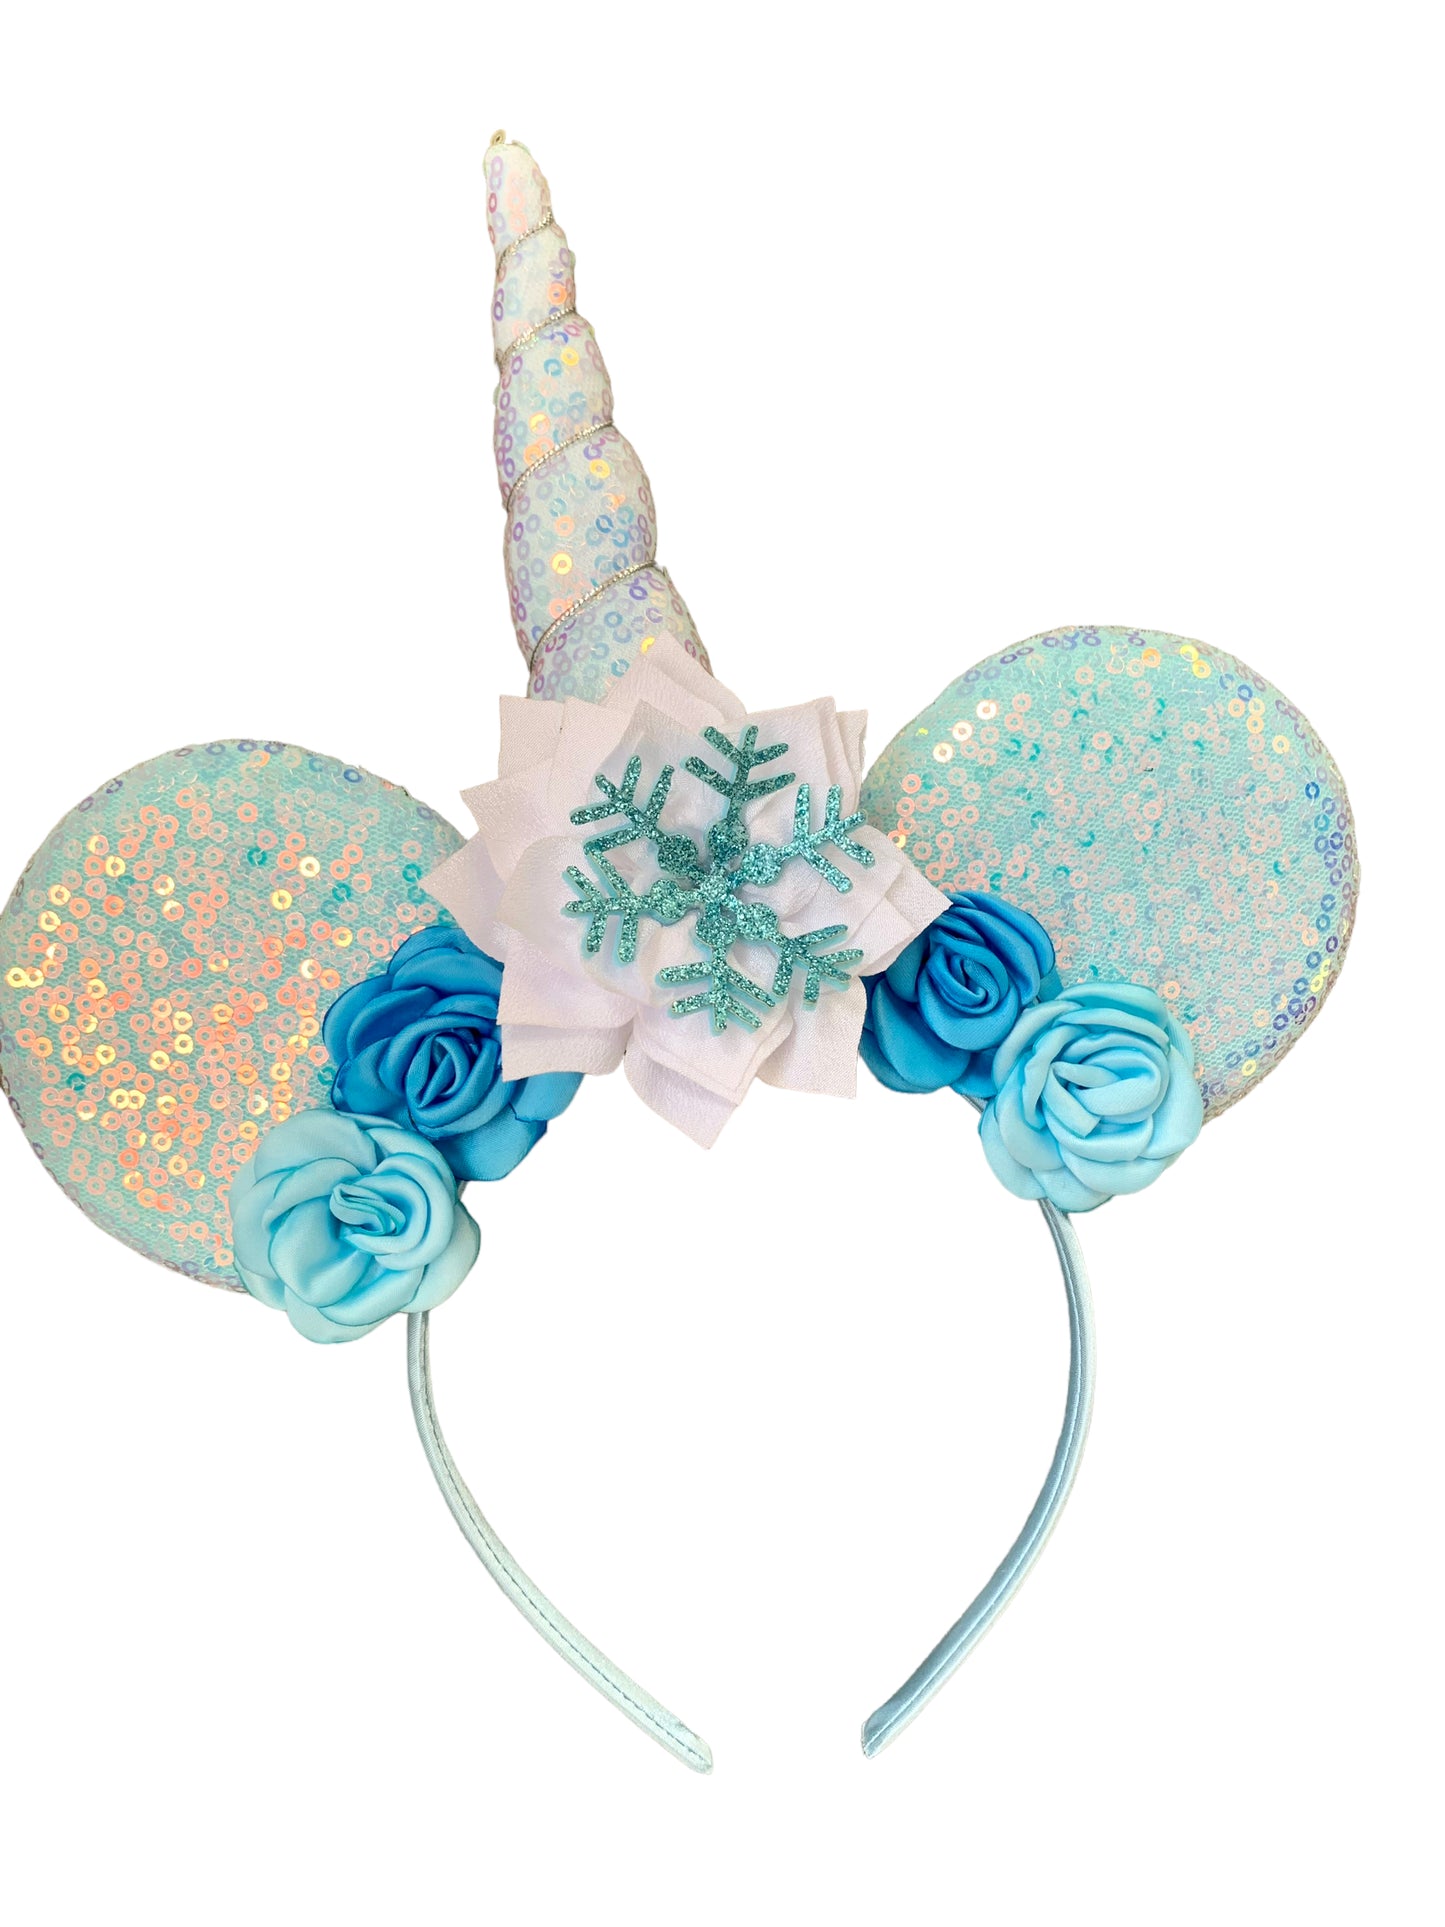 Snowflake Unicorn Mouse Ear Headband